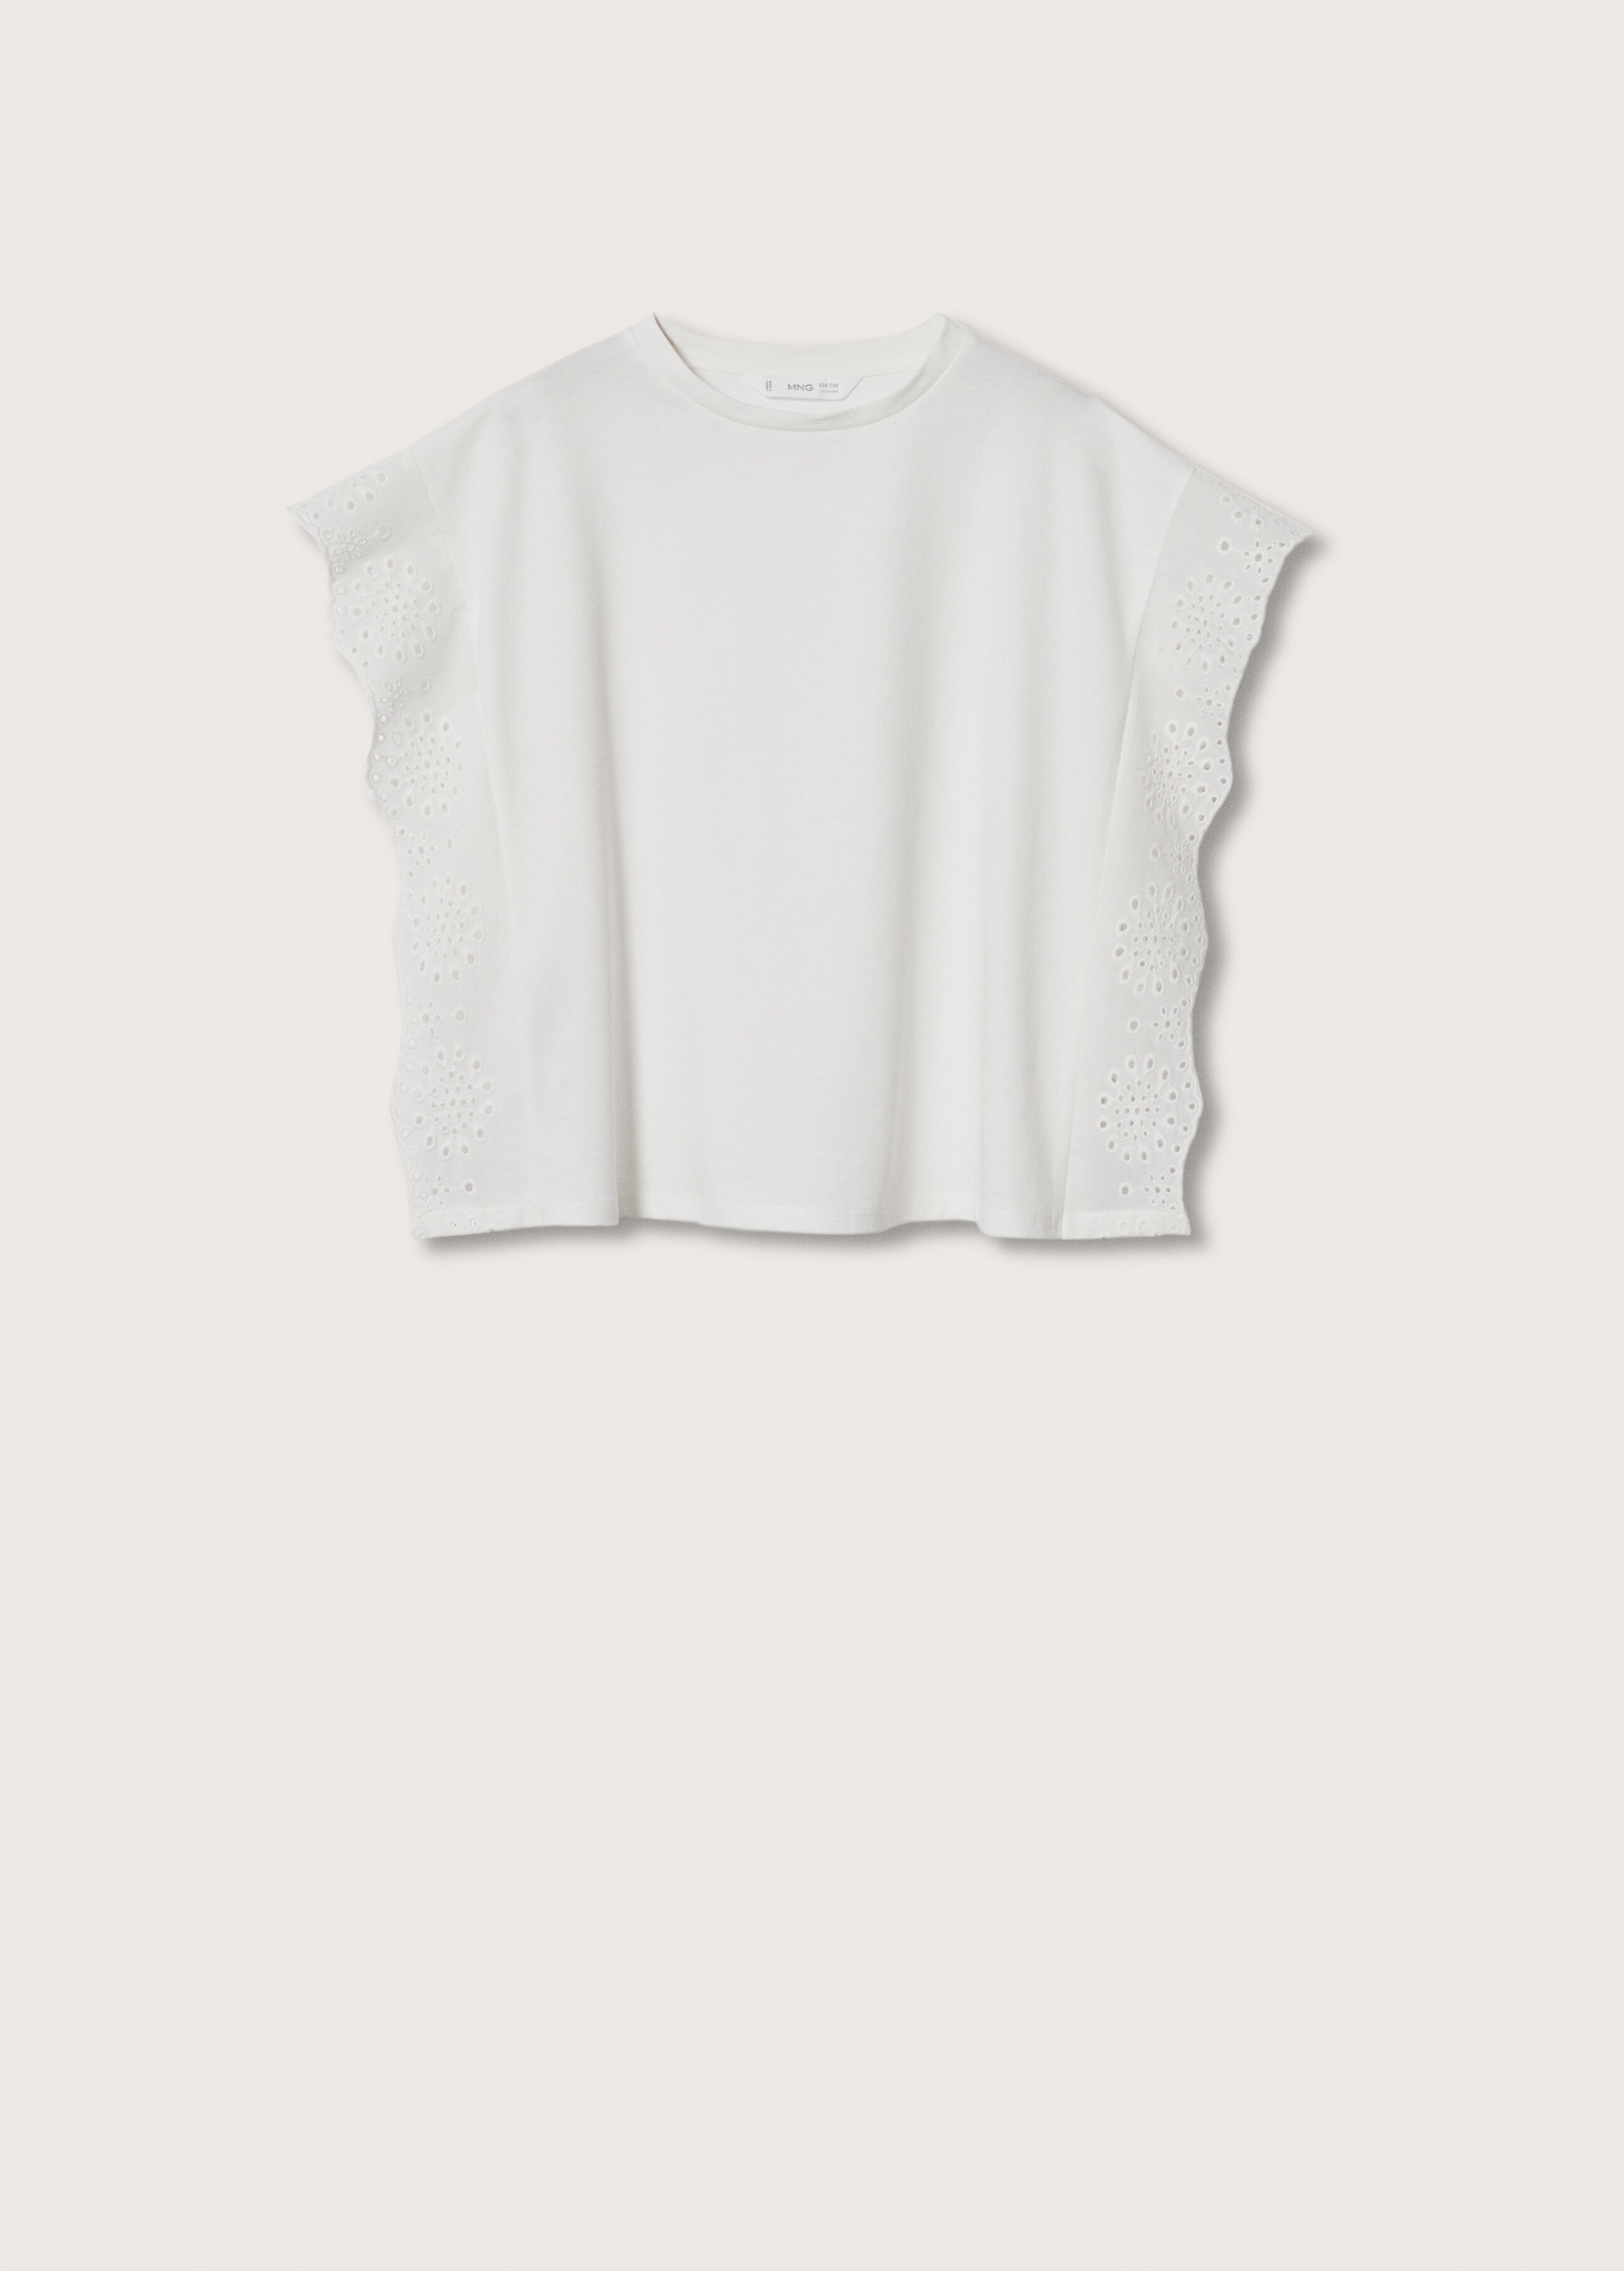 Camiseta algodón bordado - Artículo sin modelo